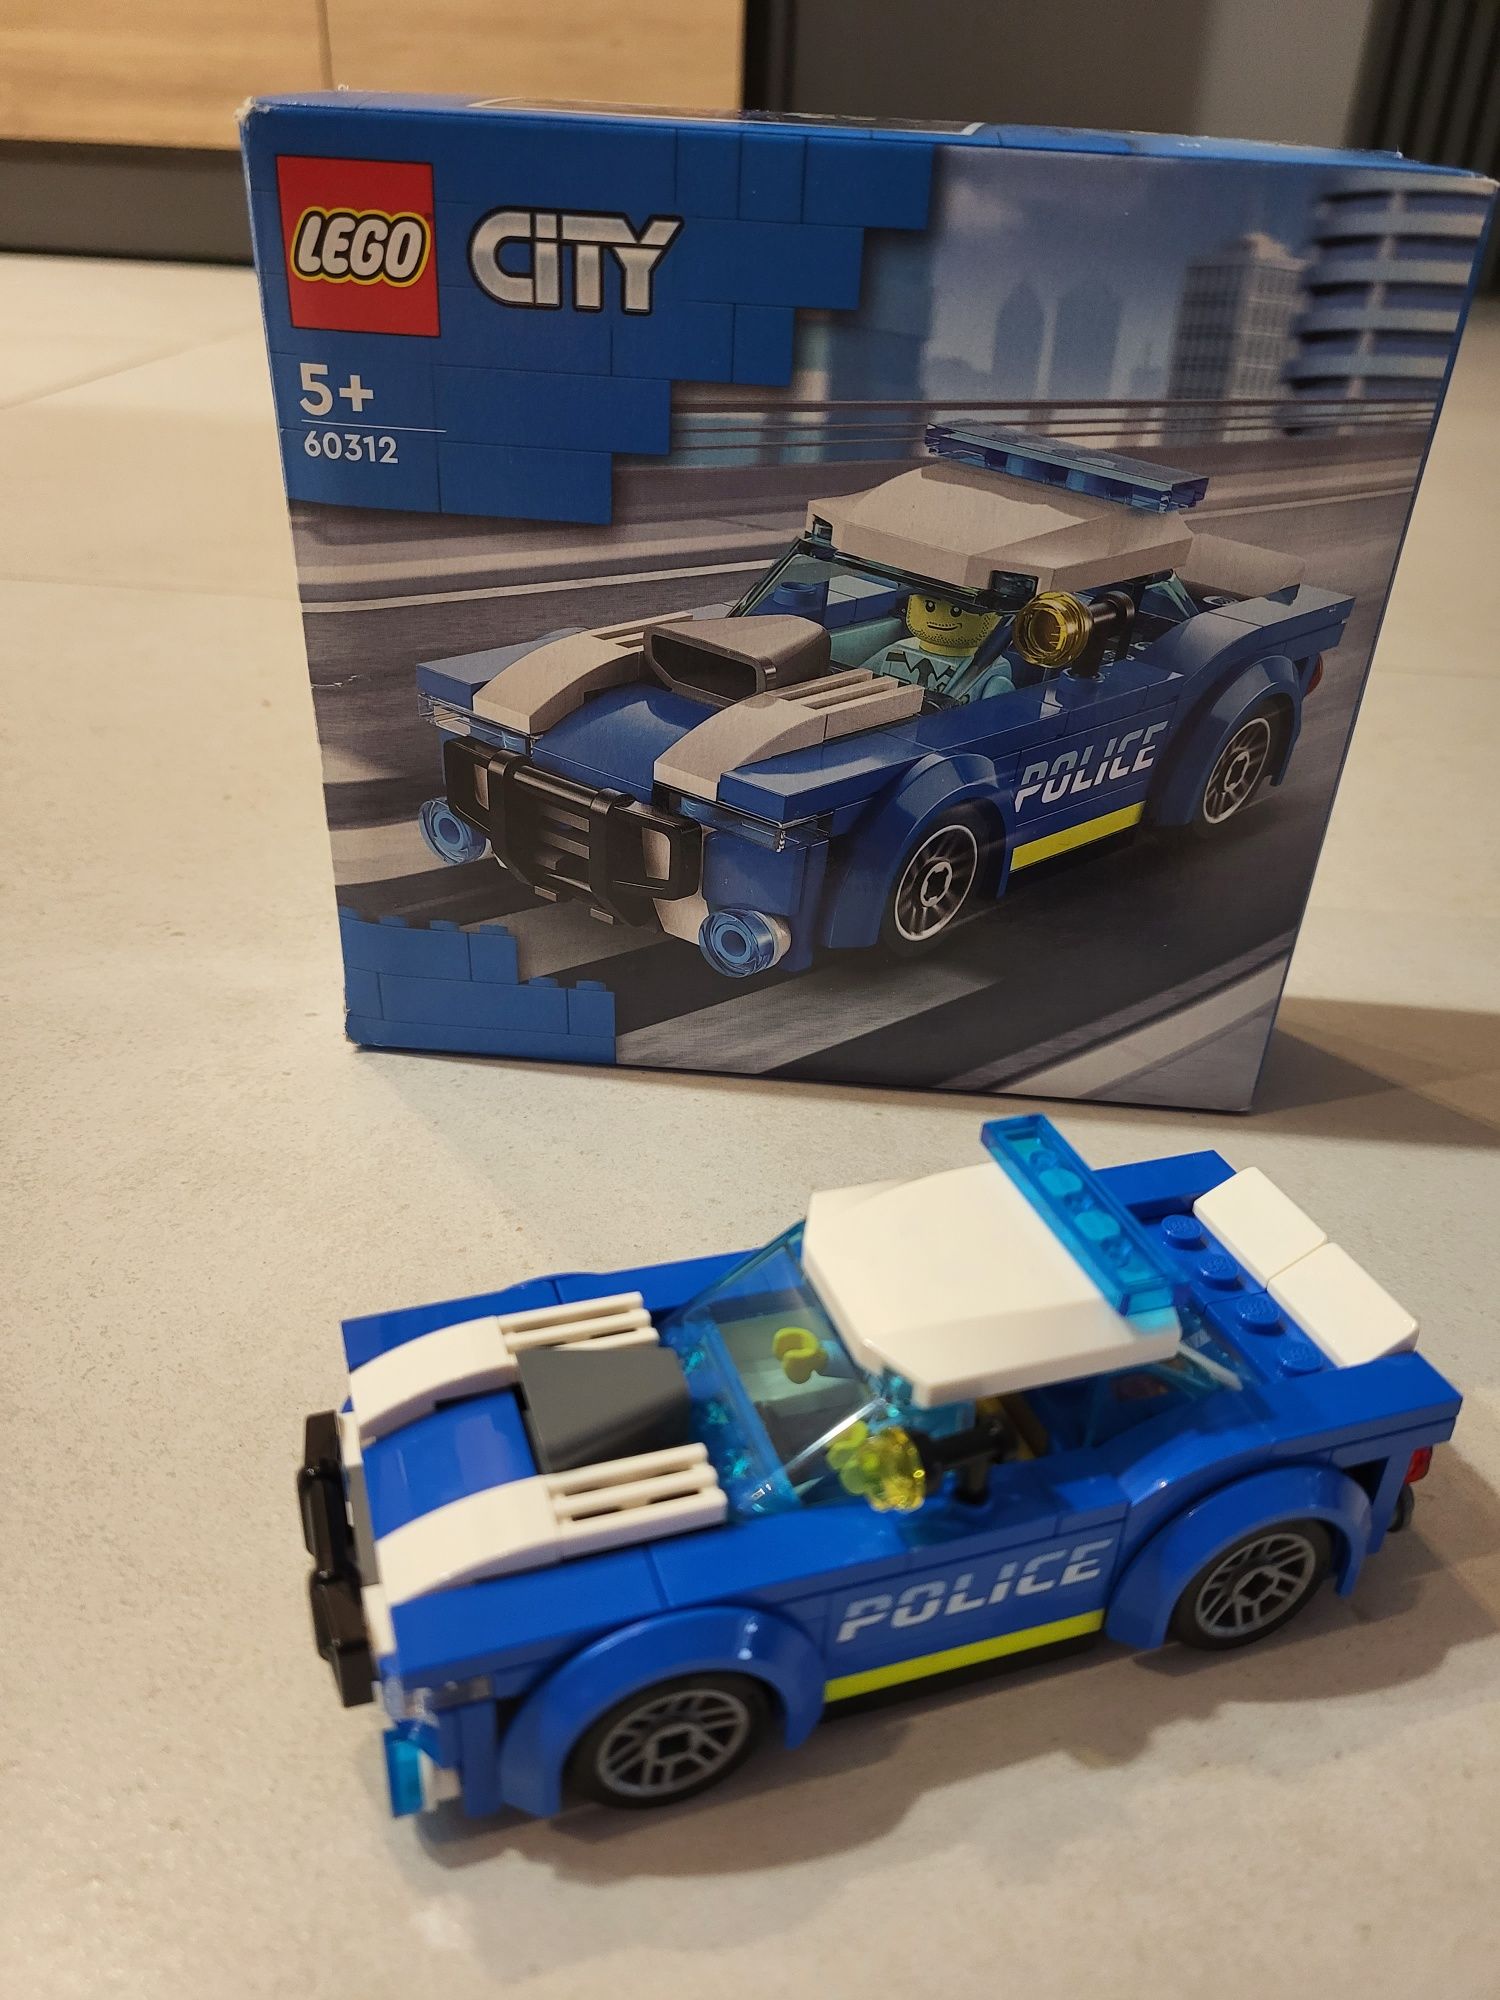 Lego City 5+ samochód policyjny